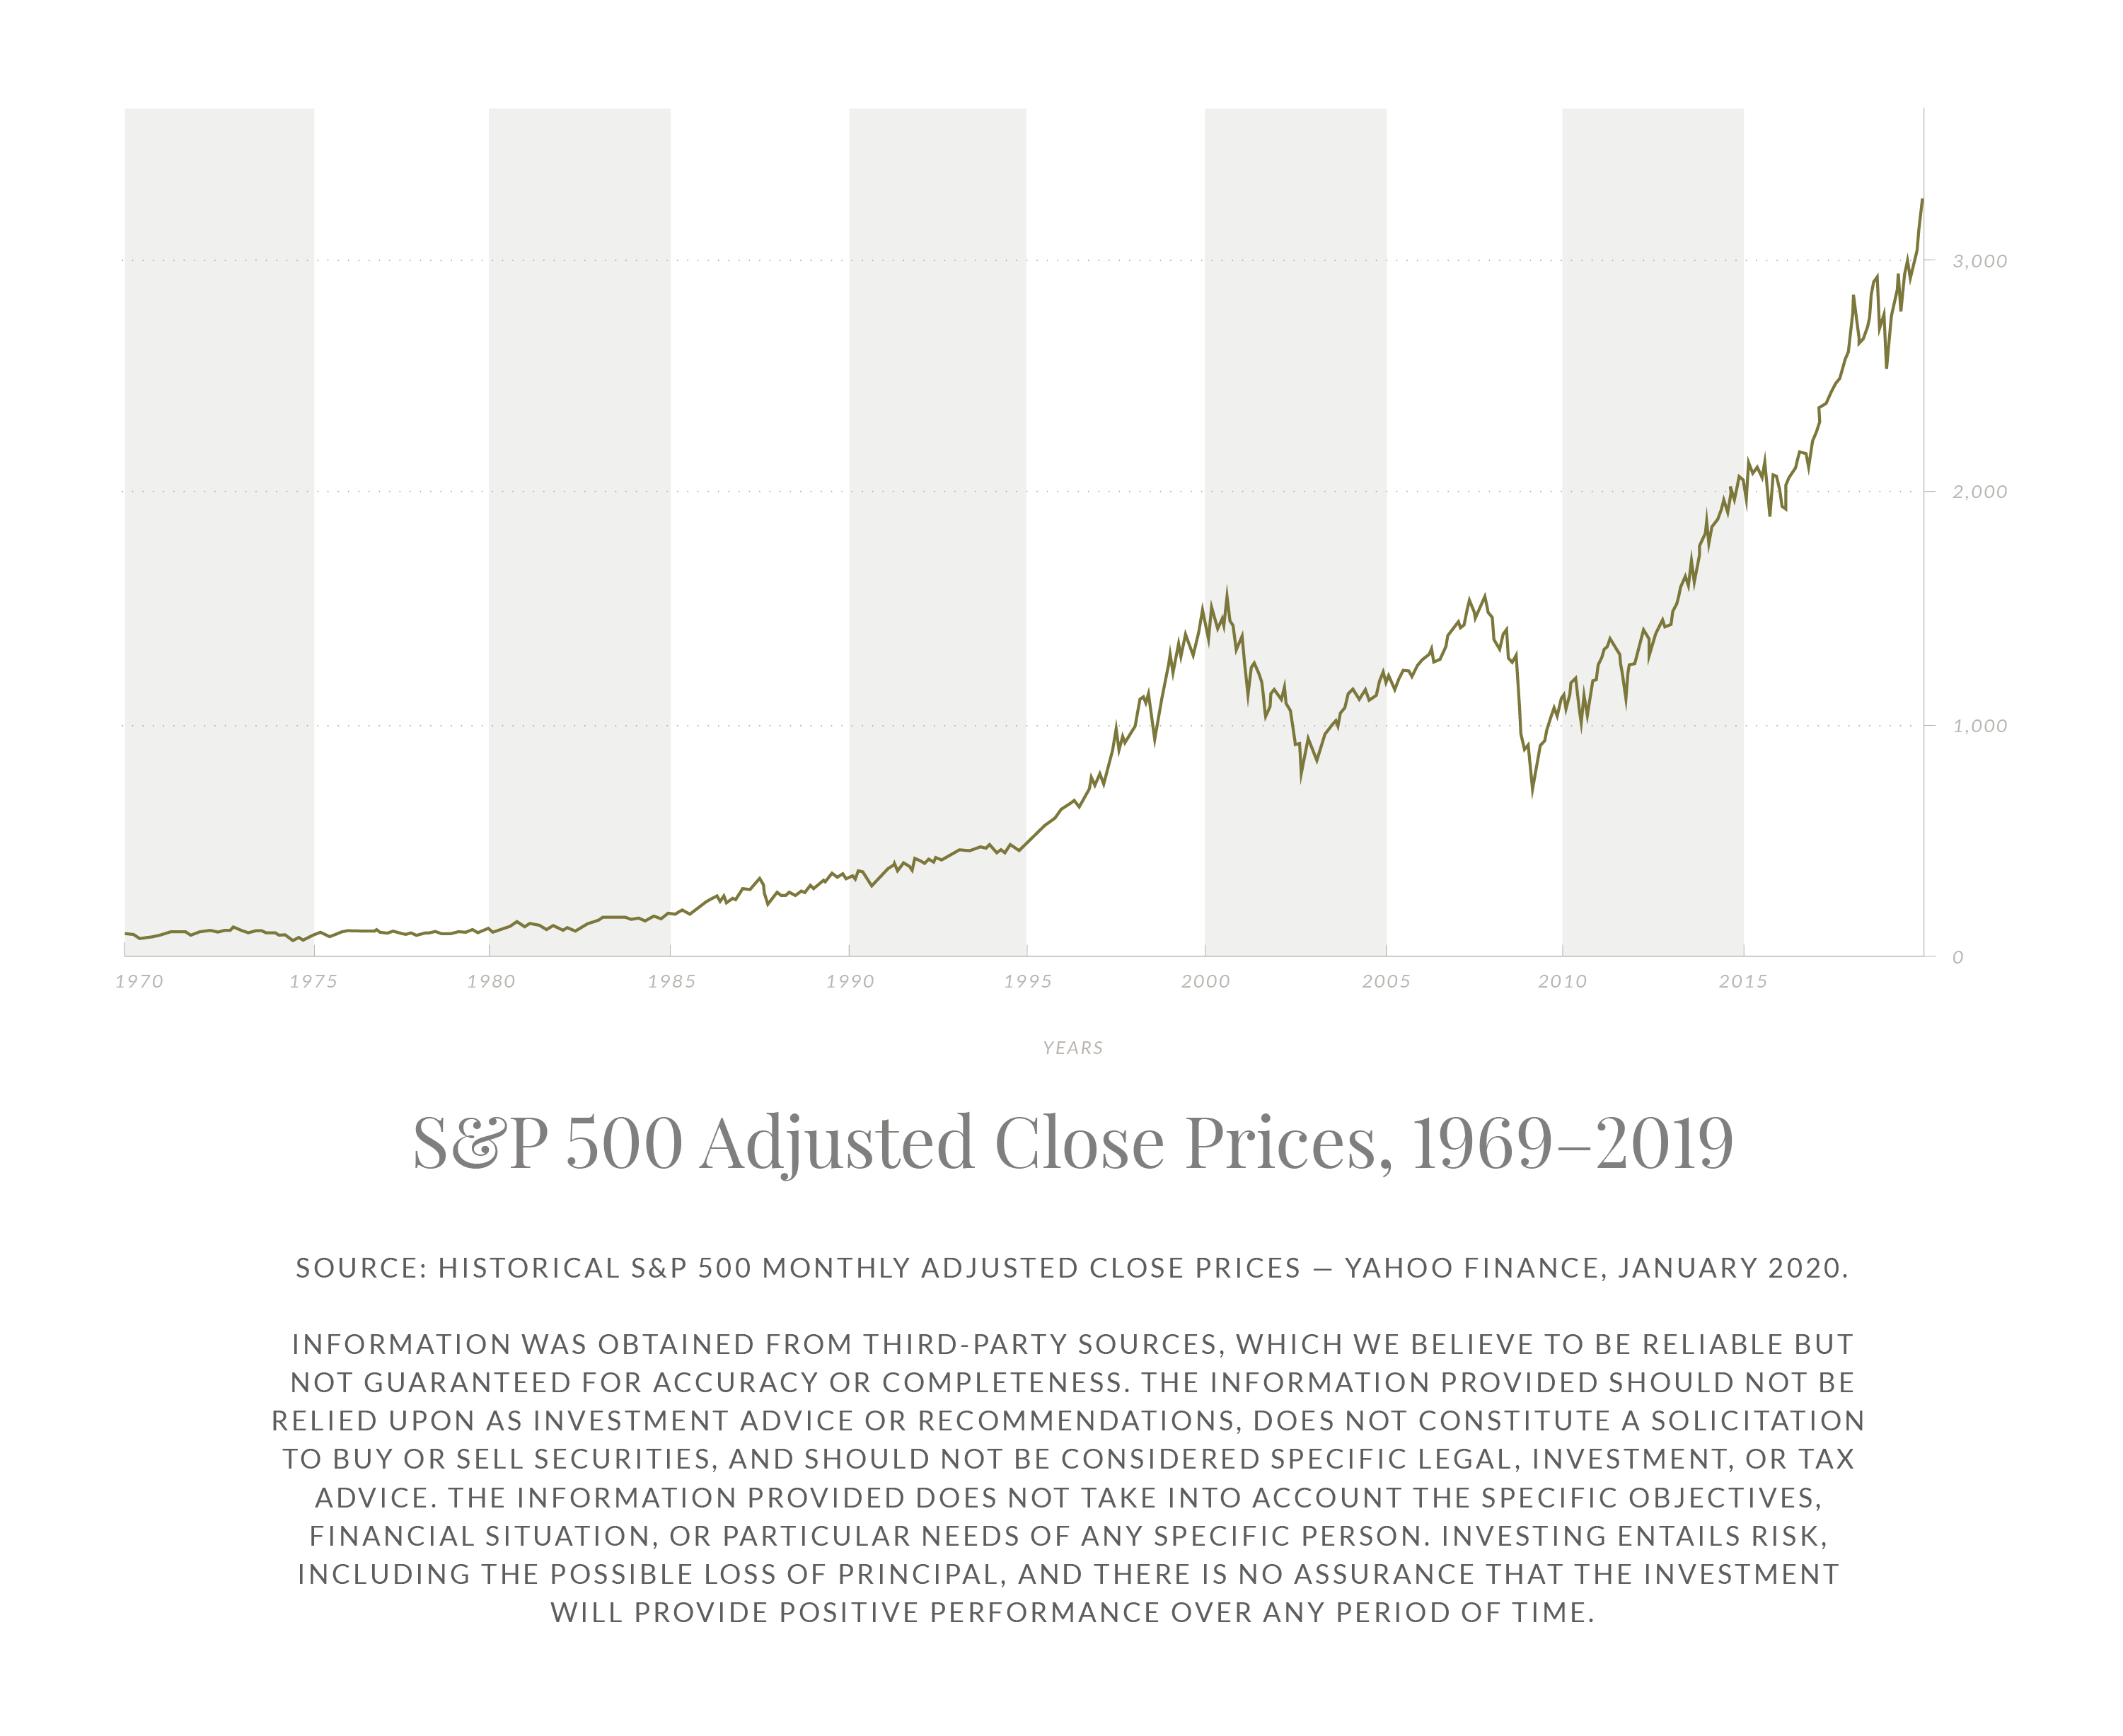 Historical S&P 500 Returns